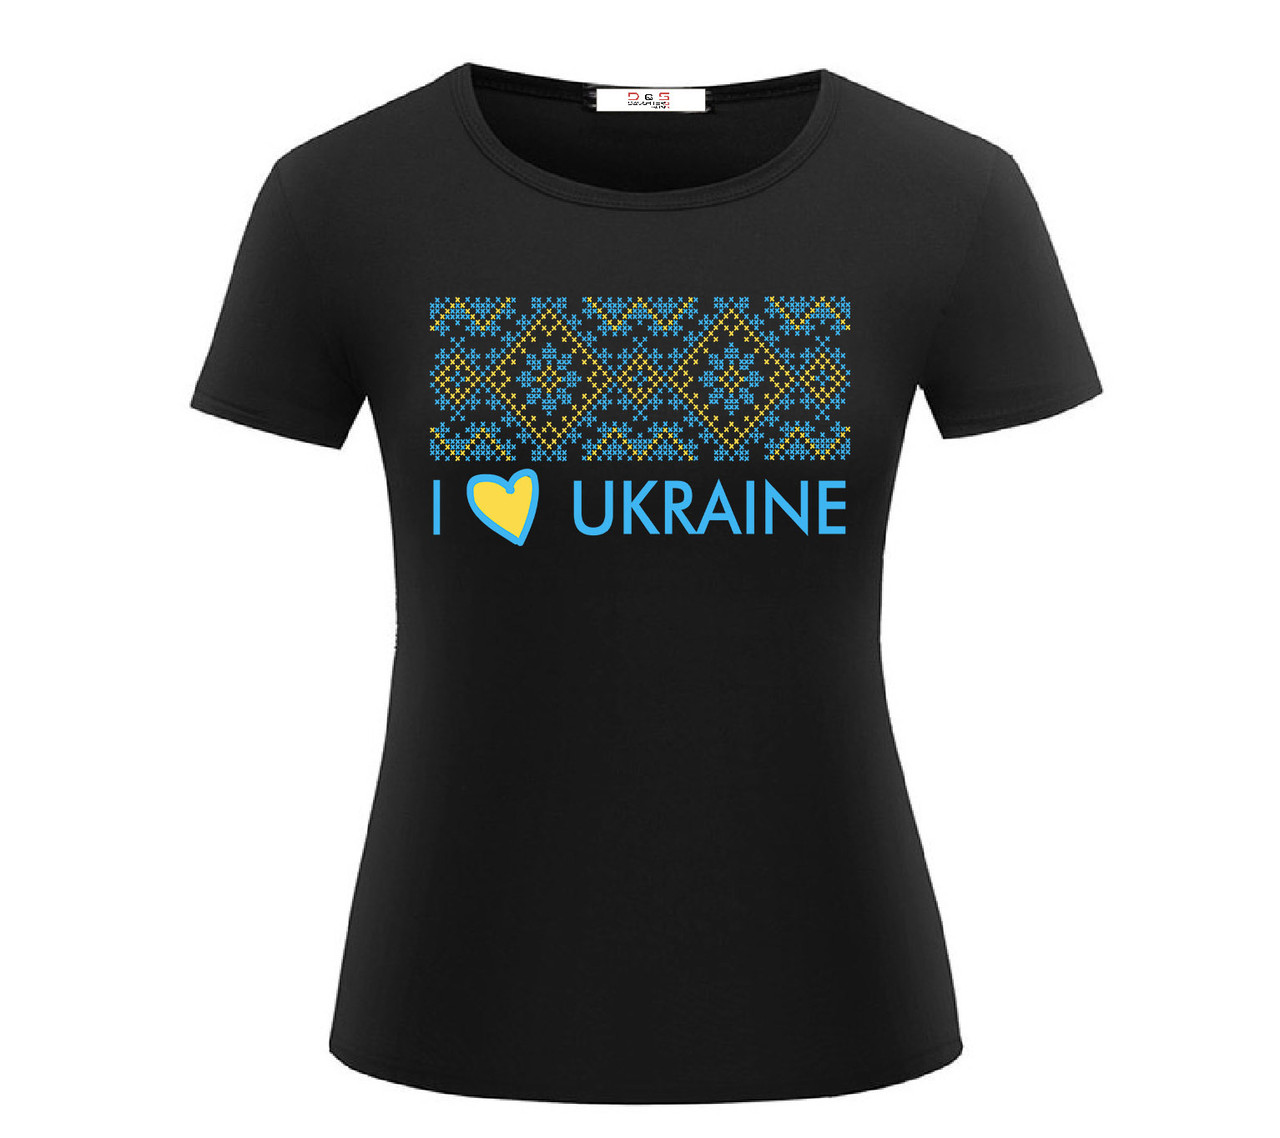 

Футболка I LOVE UKRAINE женская цветная XL, черный